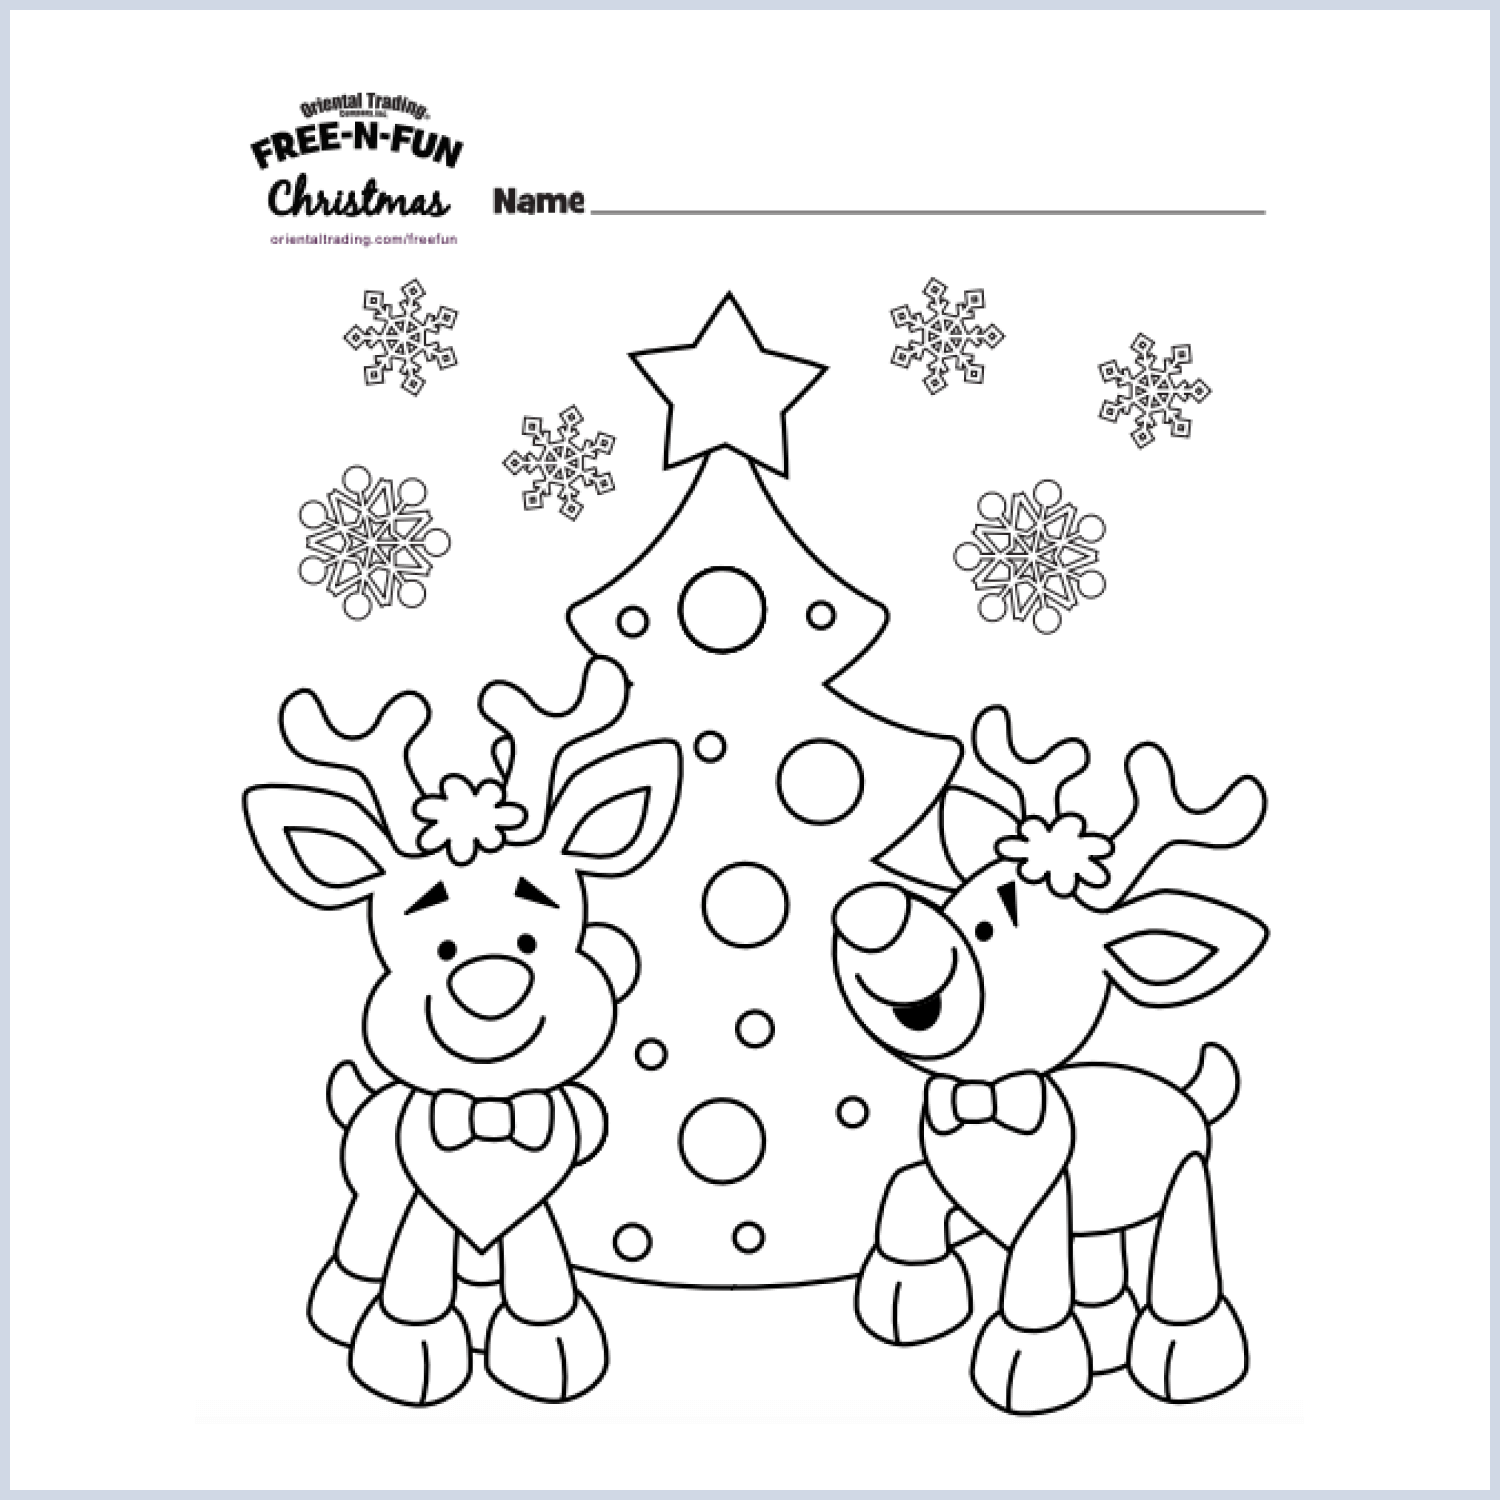 Reindeer Free Coloring Page   Master Bundles